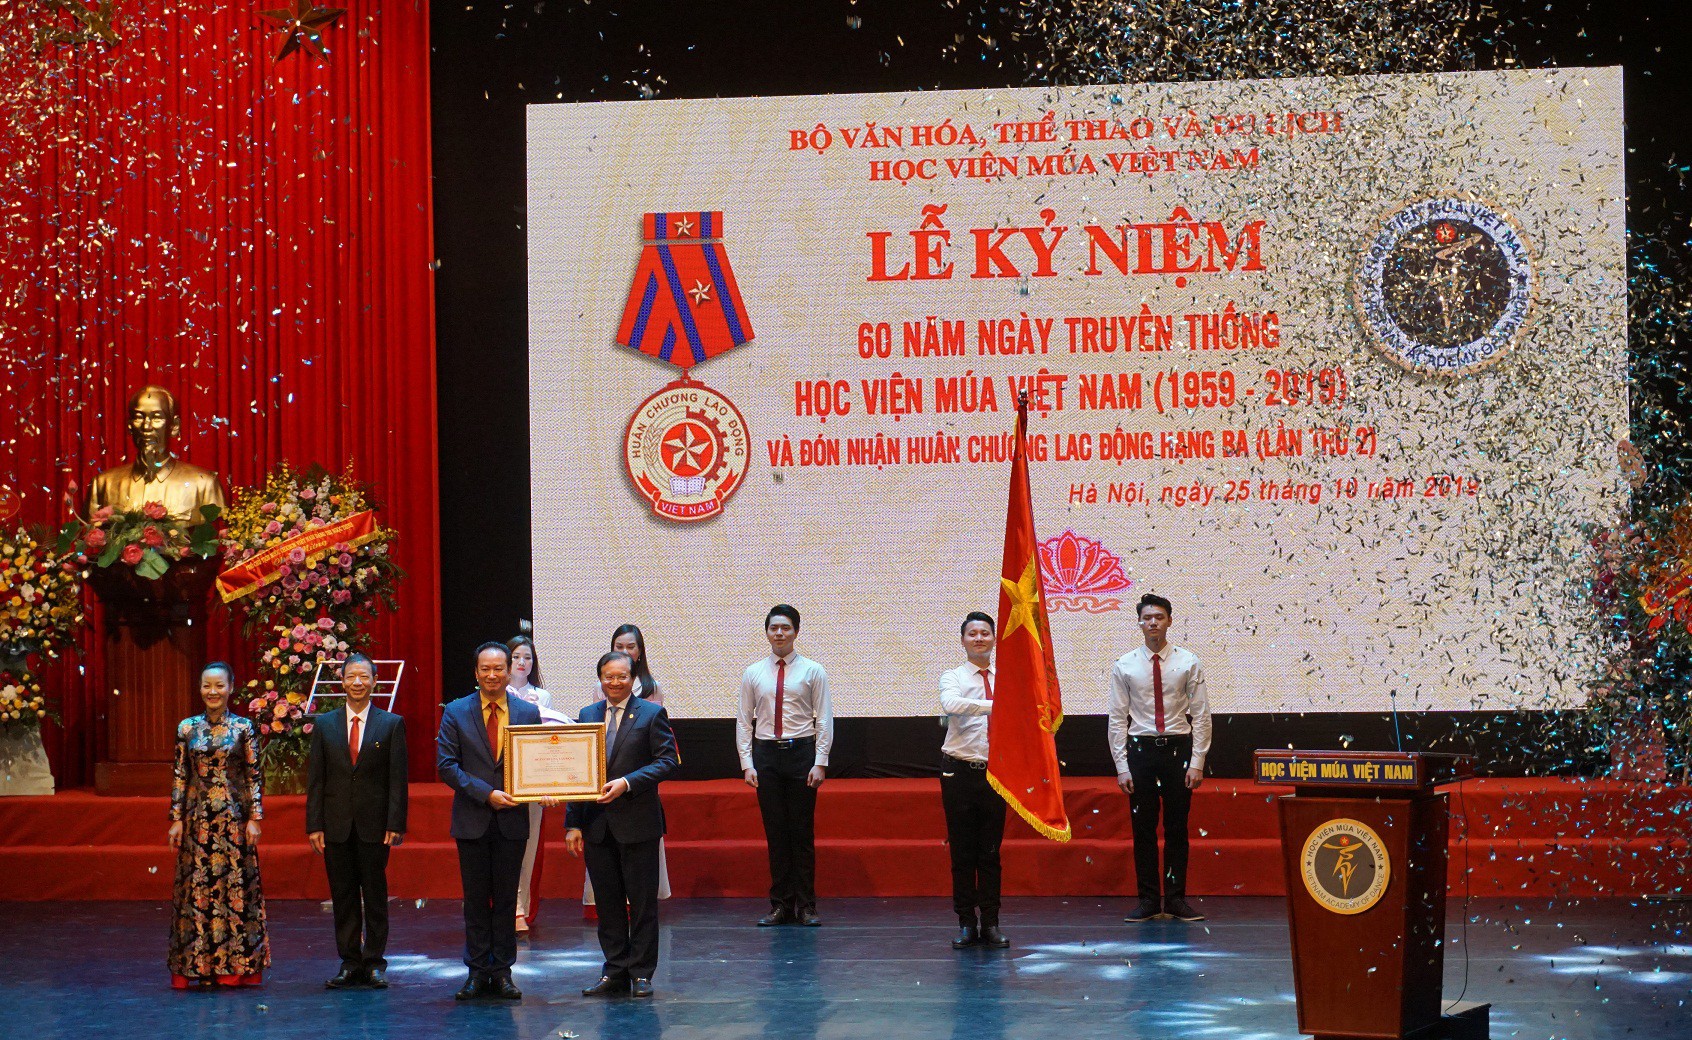 Lễ kỷ niệm 60 năm ngày truyền thống và đón nhận Huân chương Lao động hạng Ba của Học viện Múa Việt Nam